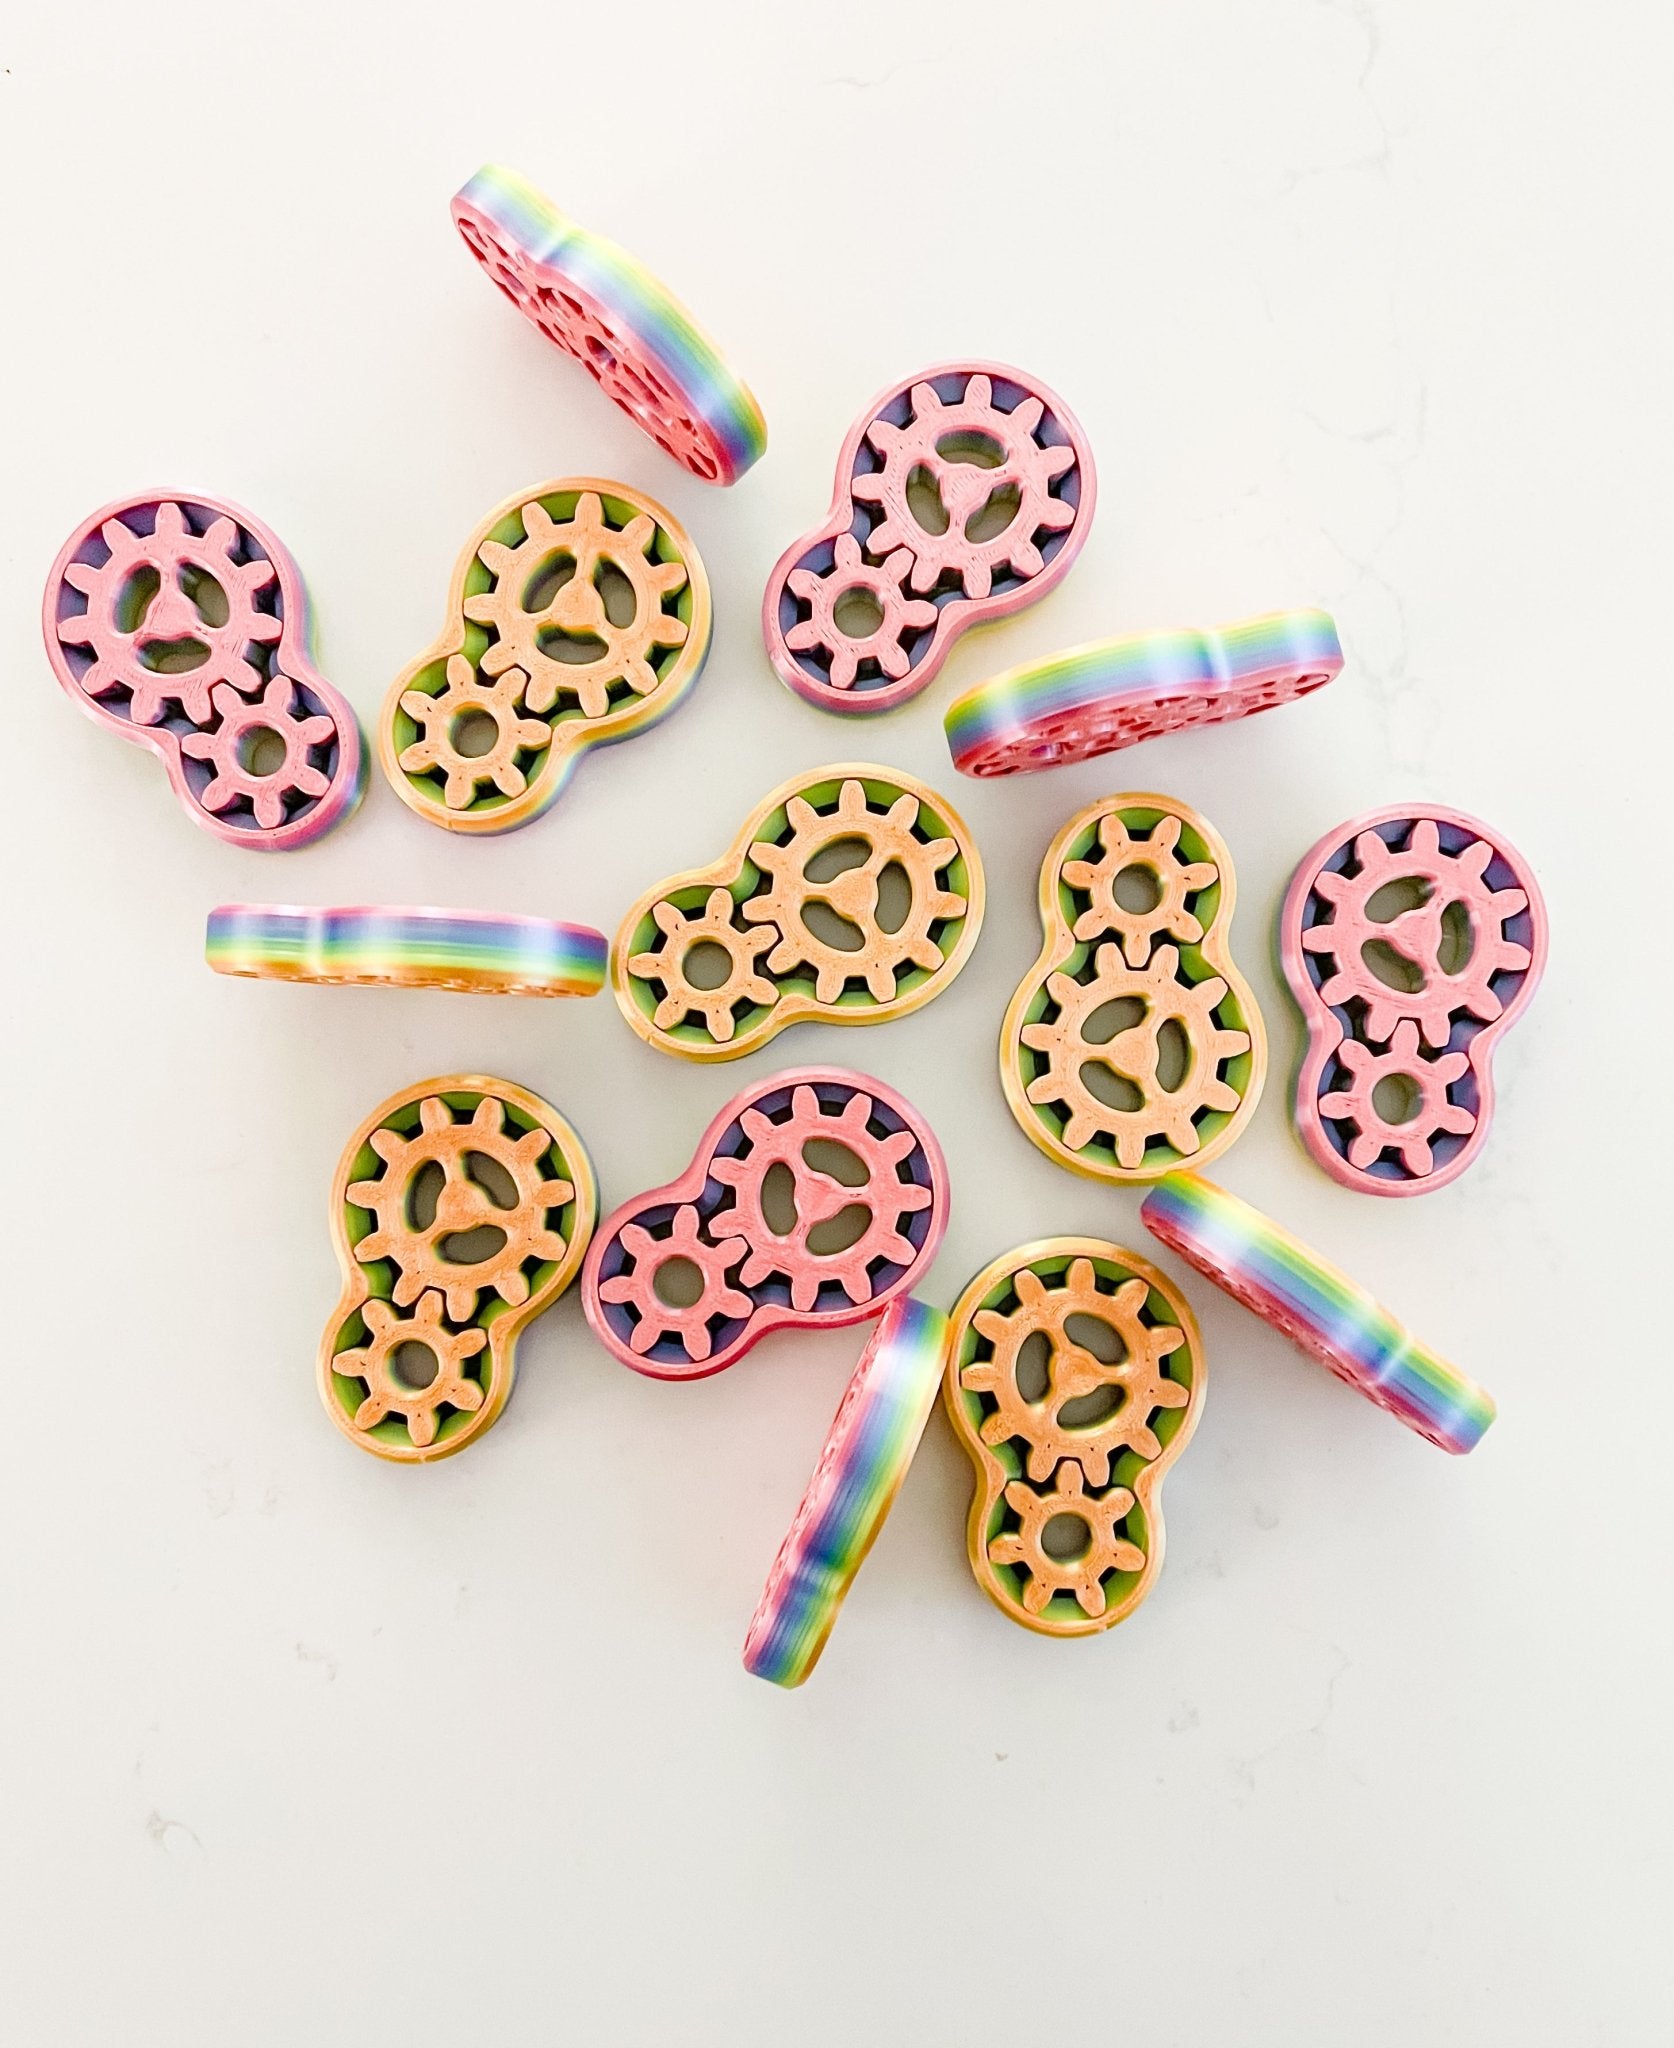 Rainbow Double Gear Fidget Toy - Designs by Lauren Ann